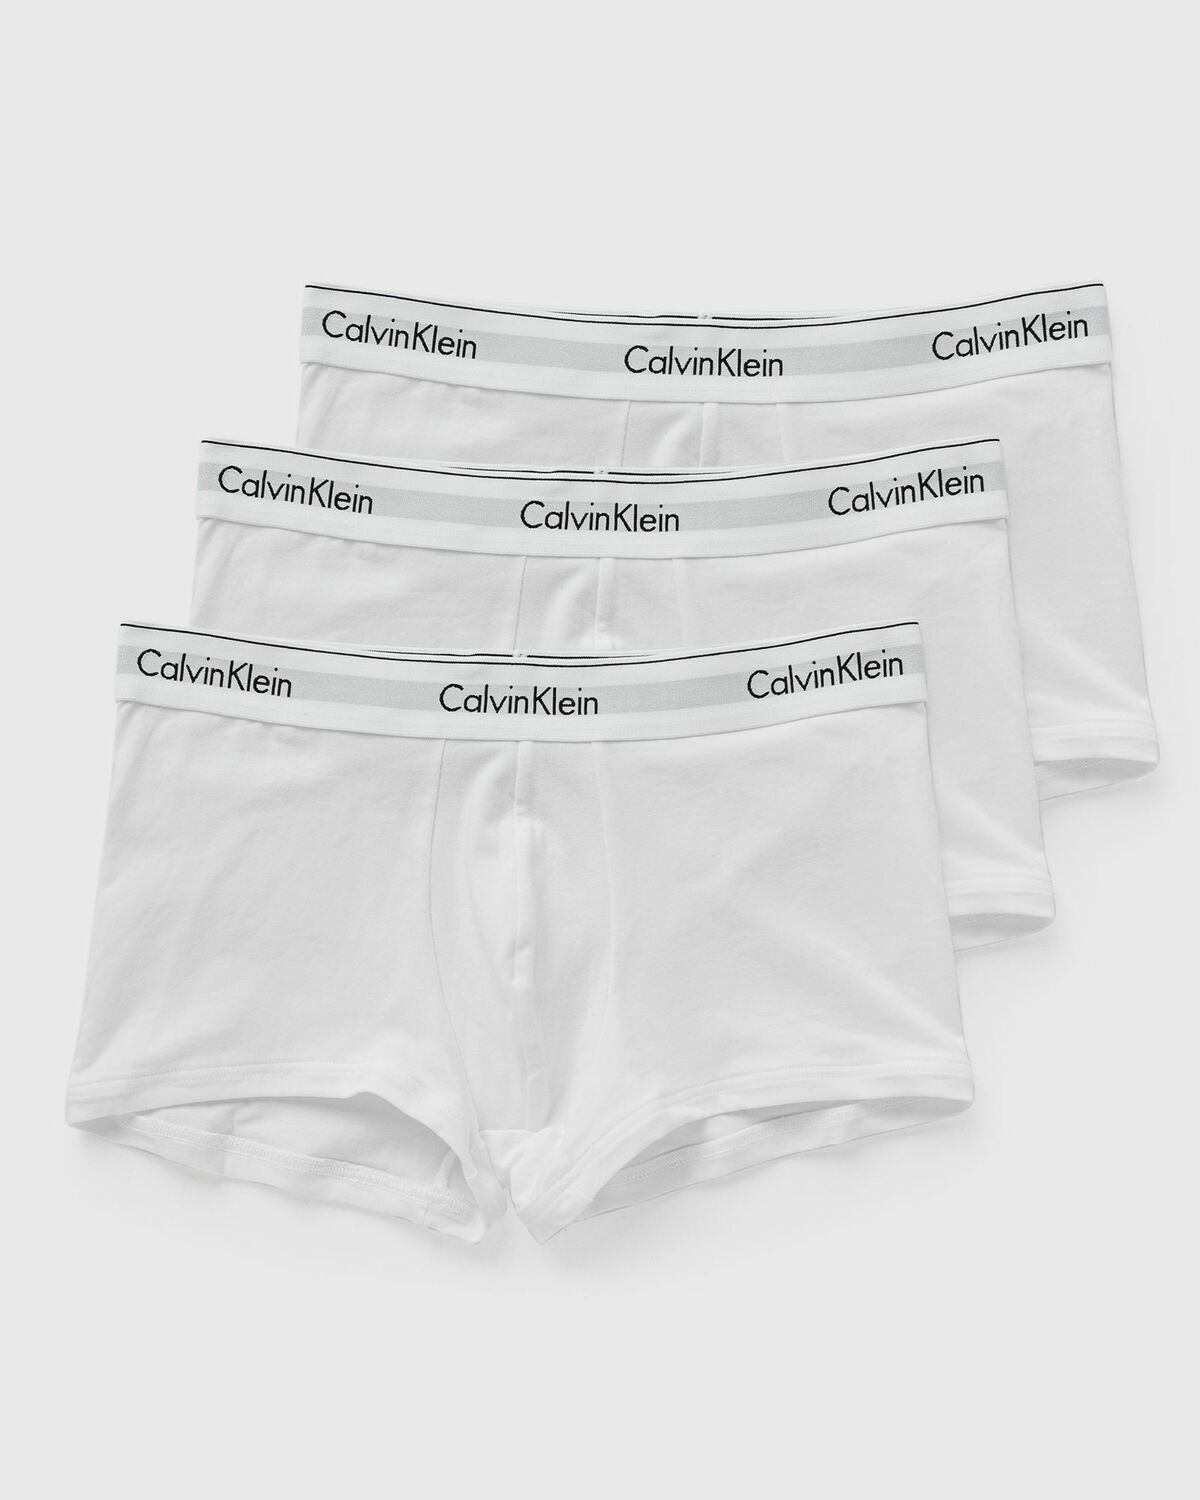 Calvin Klein Underwear Modern Cotton Stretch Trunk 3 Pack White - Mens -  Boxers & Briefs Calvin Klein Underwear